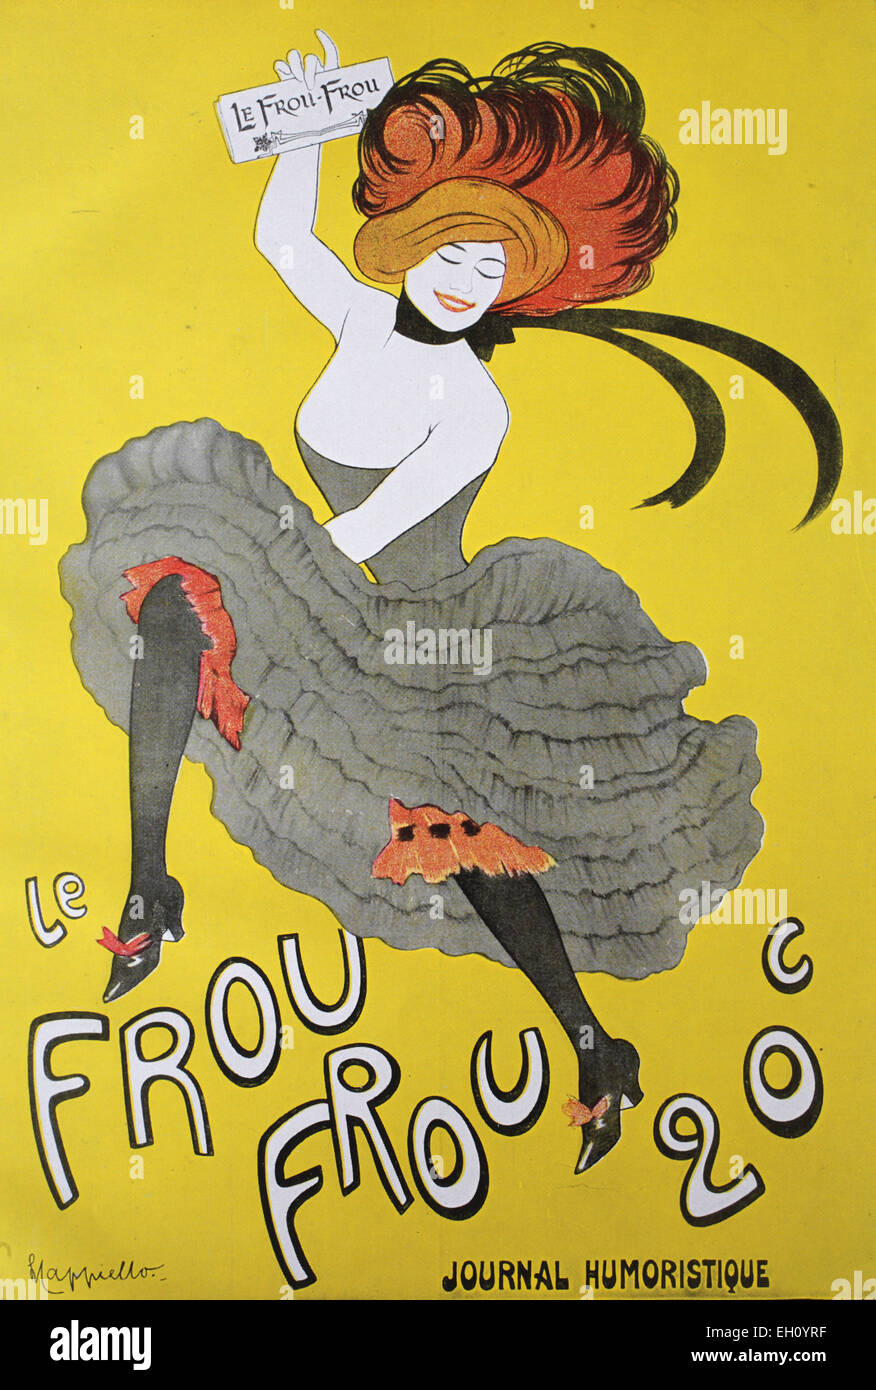 "Historische Werbeplakat für die französische Zeitung"Frou Frou – '' von Capiello, um 1880" Stockfoto